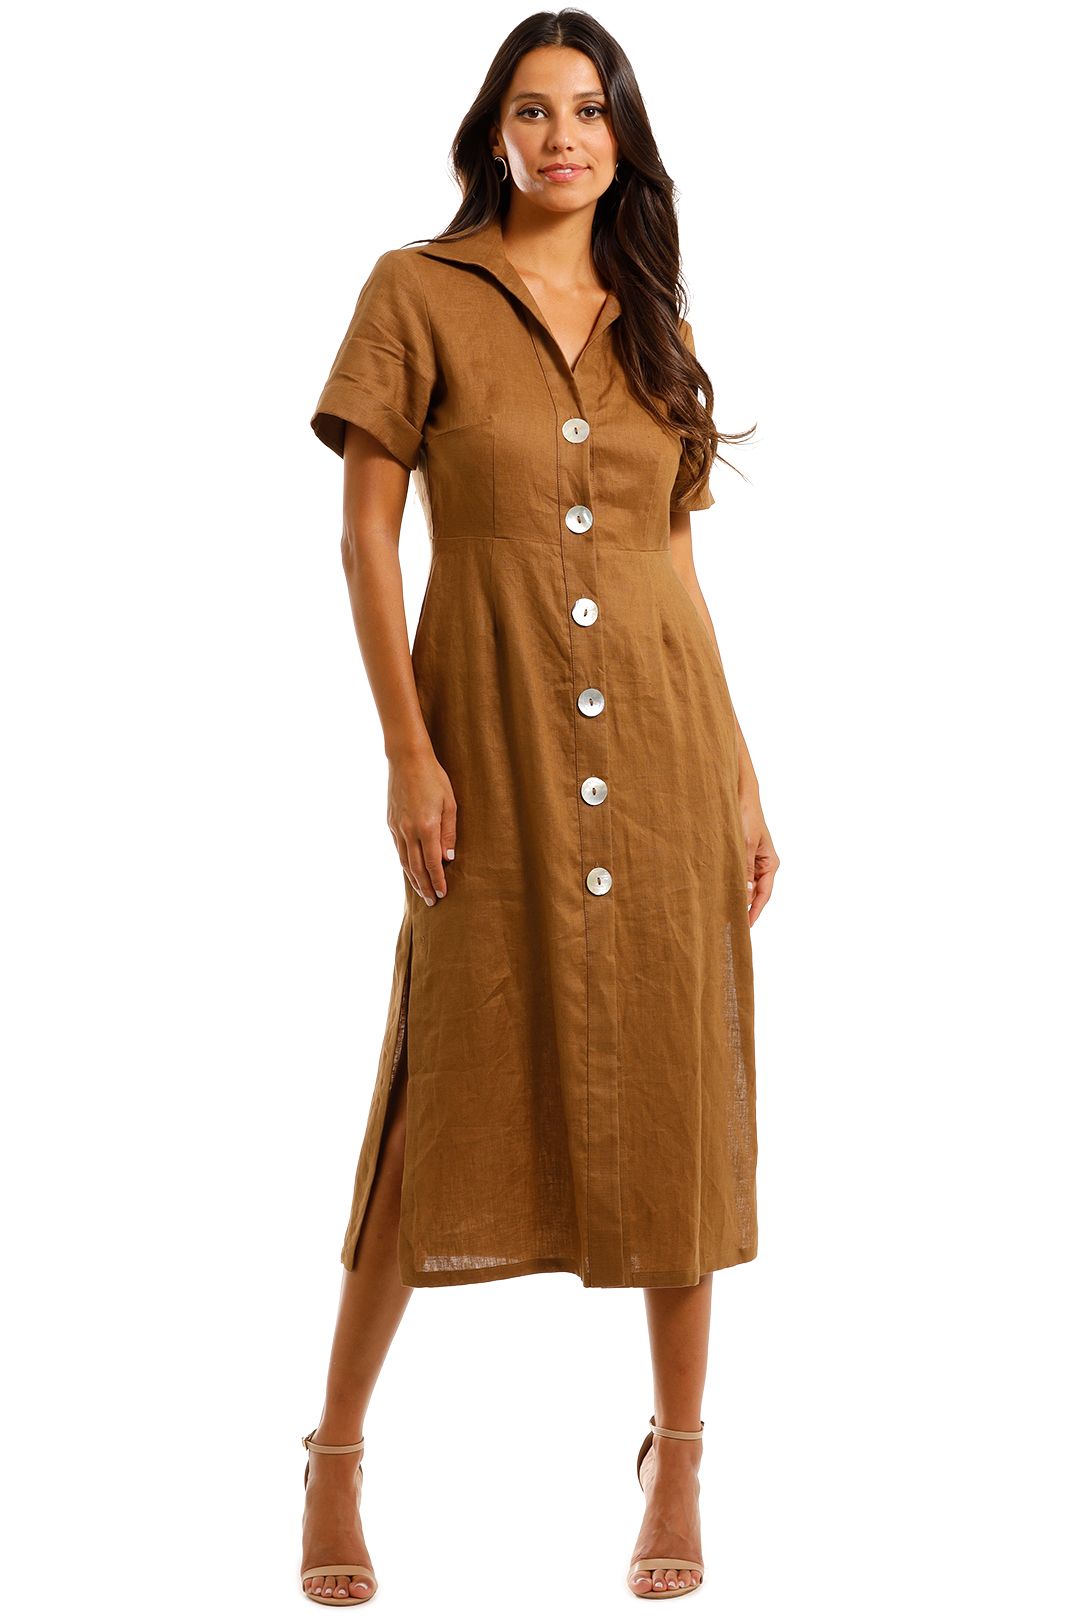 Jillian Boustred Safari Dress Coffee Midi Summer Dress